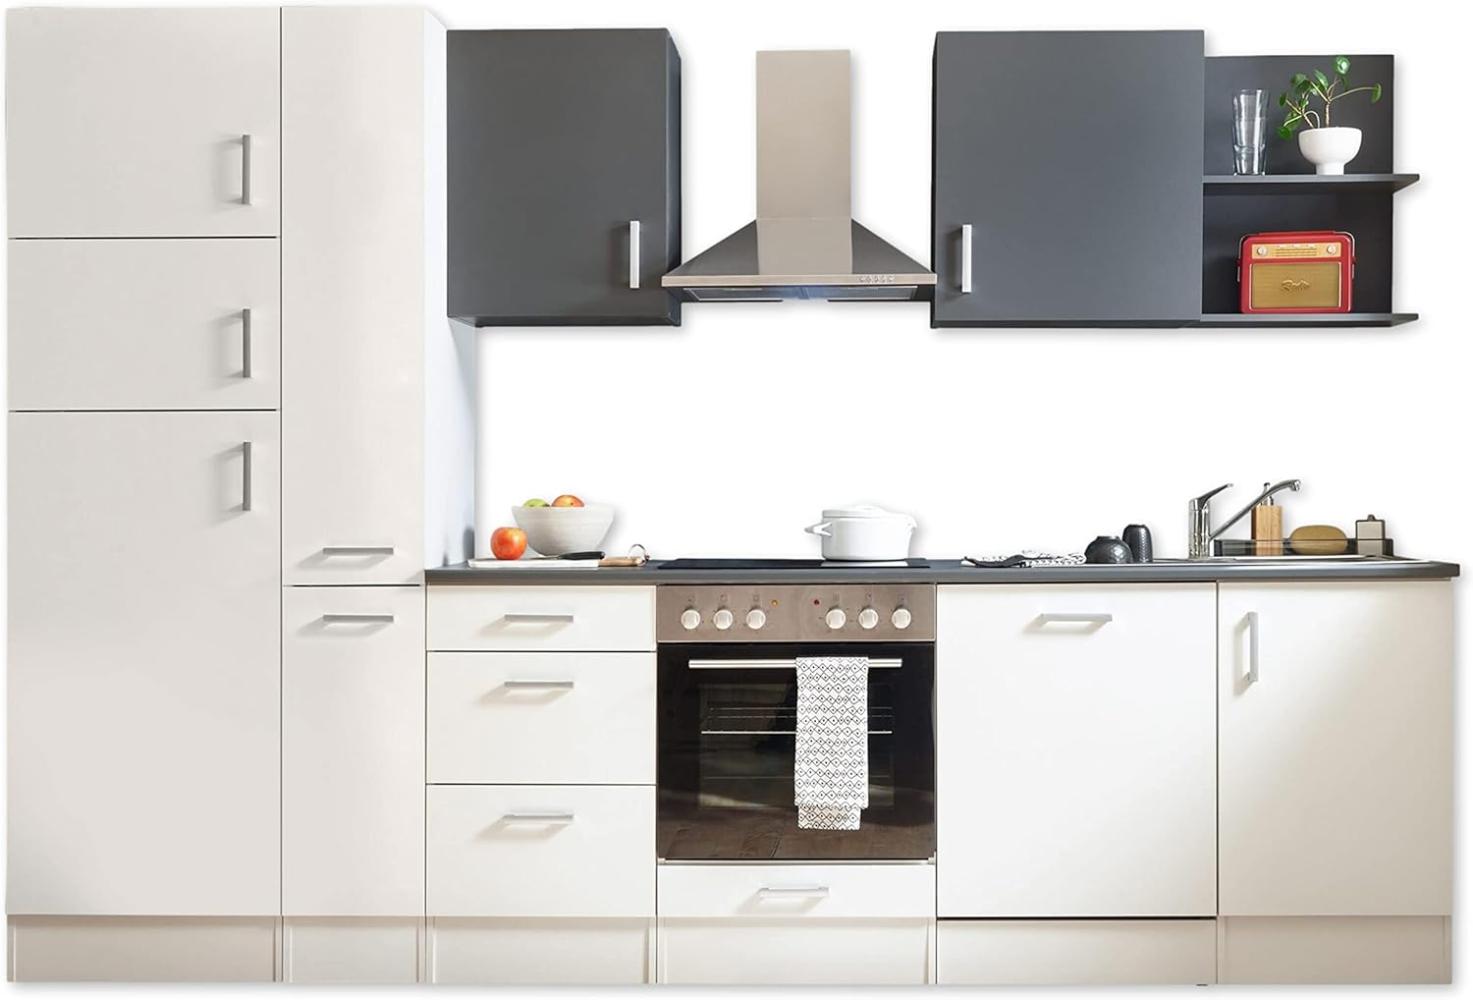 Stella Trading Corner 310 Moderne Küchenzeile ohne Elektrogeräte in Weiß, Anthrazit-Geräumige Einbauküche mit viel Platz und Stauraum, 310 x 211 x 60 cm Bild 1